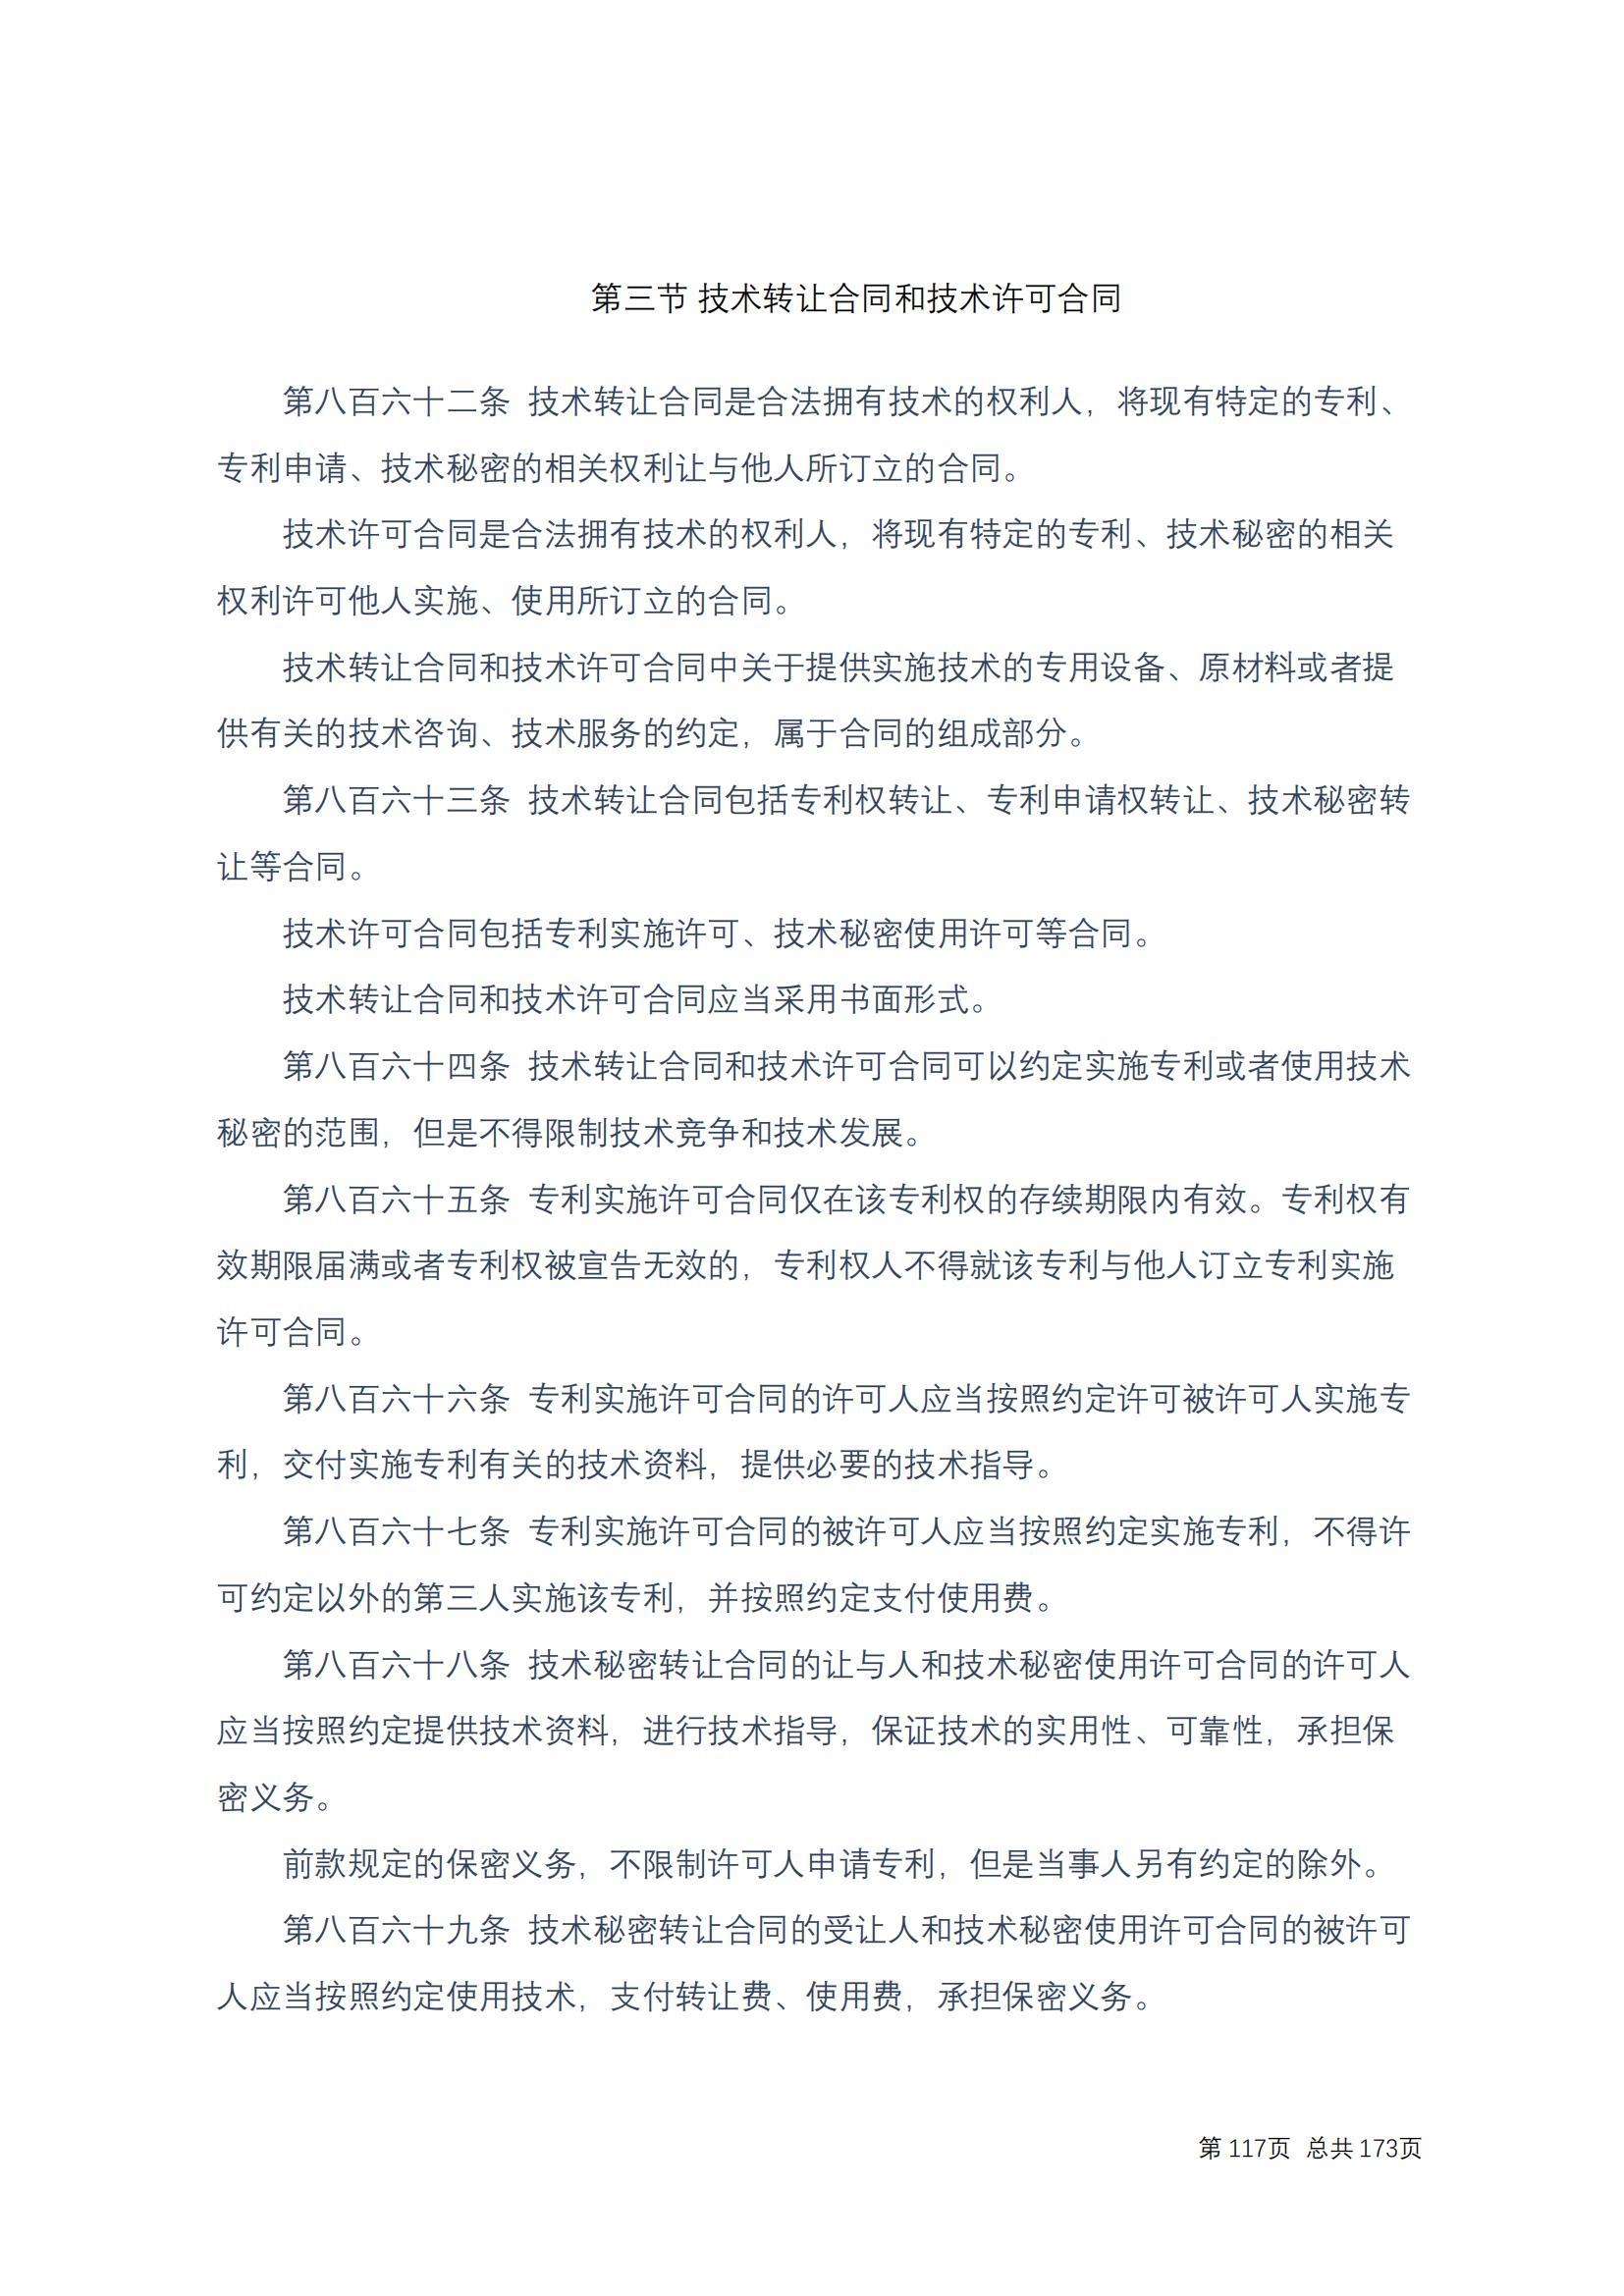 中华人民共和国民法典 修改过_116